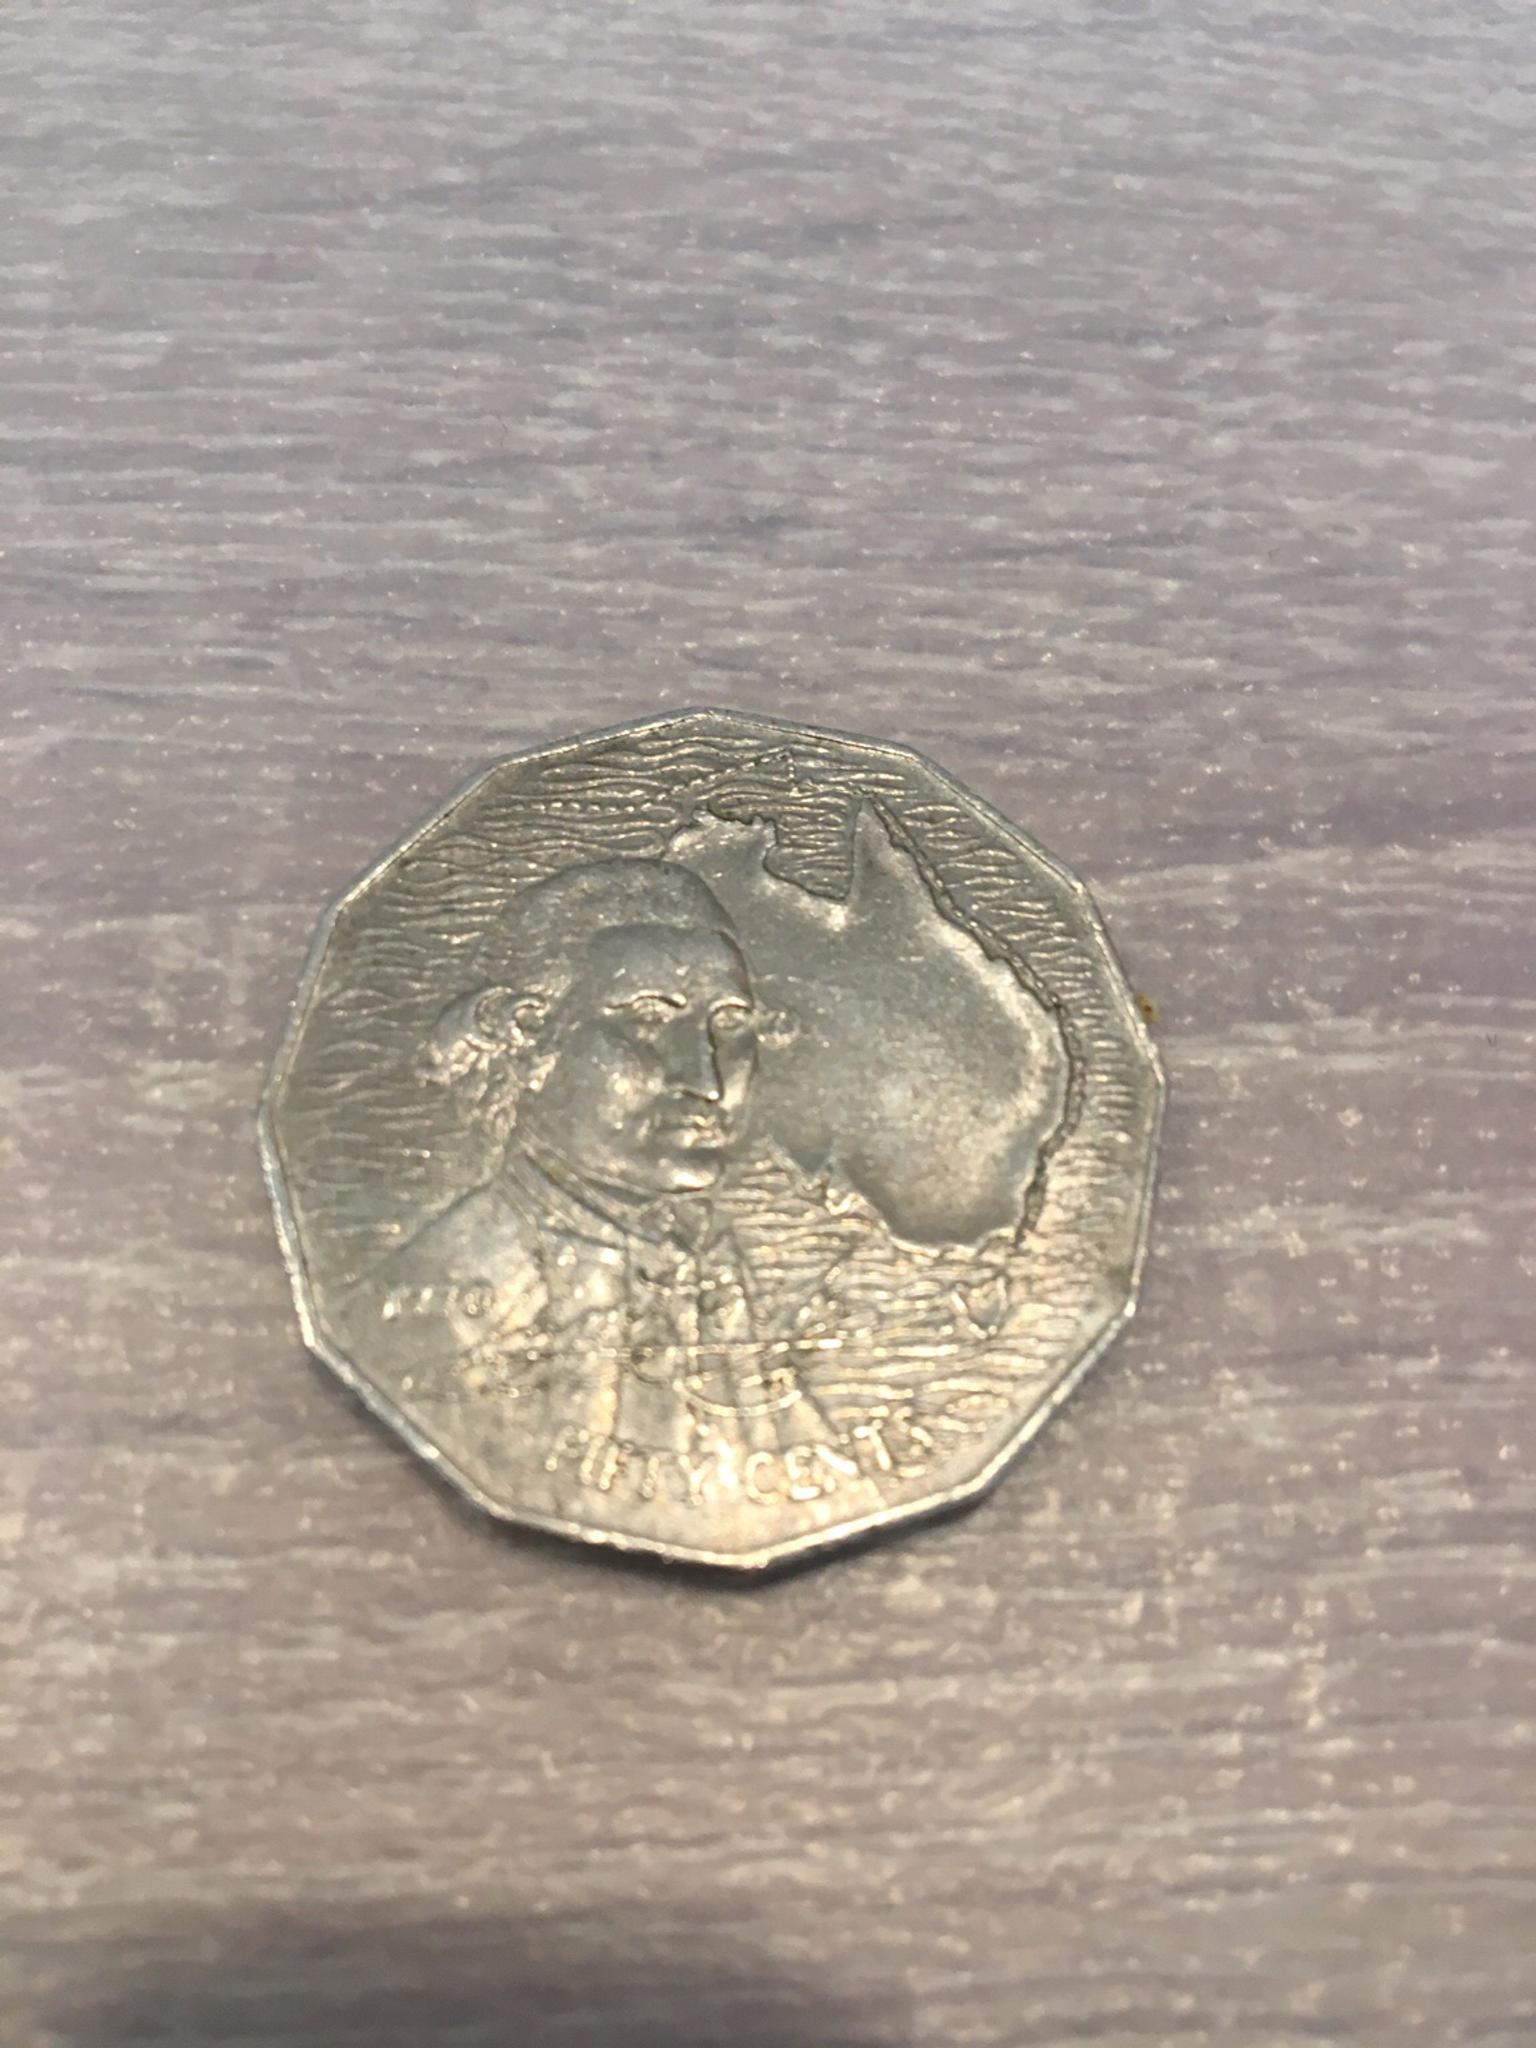 50 Cent Munze Australien 1970 In 4432 Gemeinde Ernsthofen For 4 50 For Sale Shpock